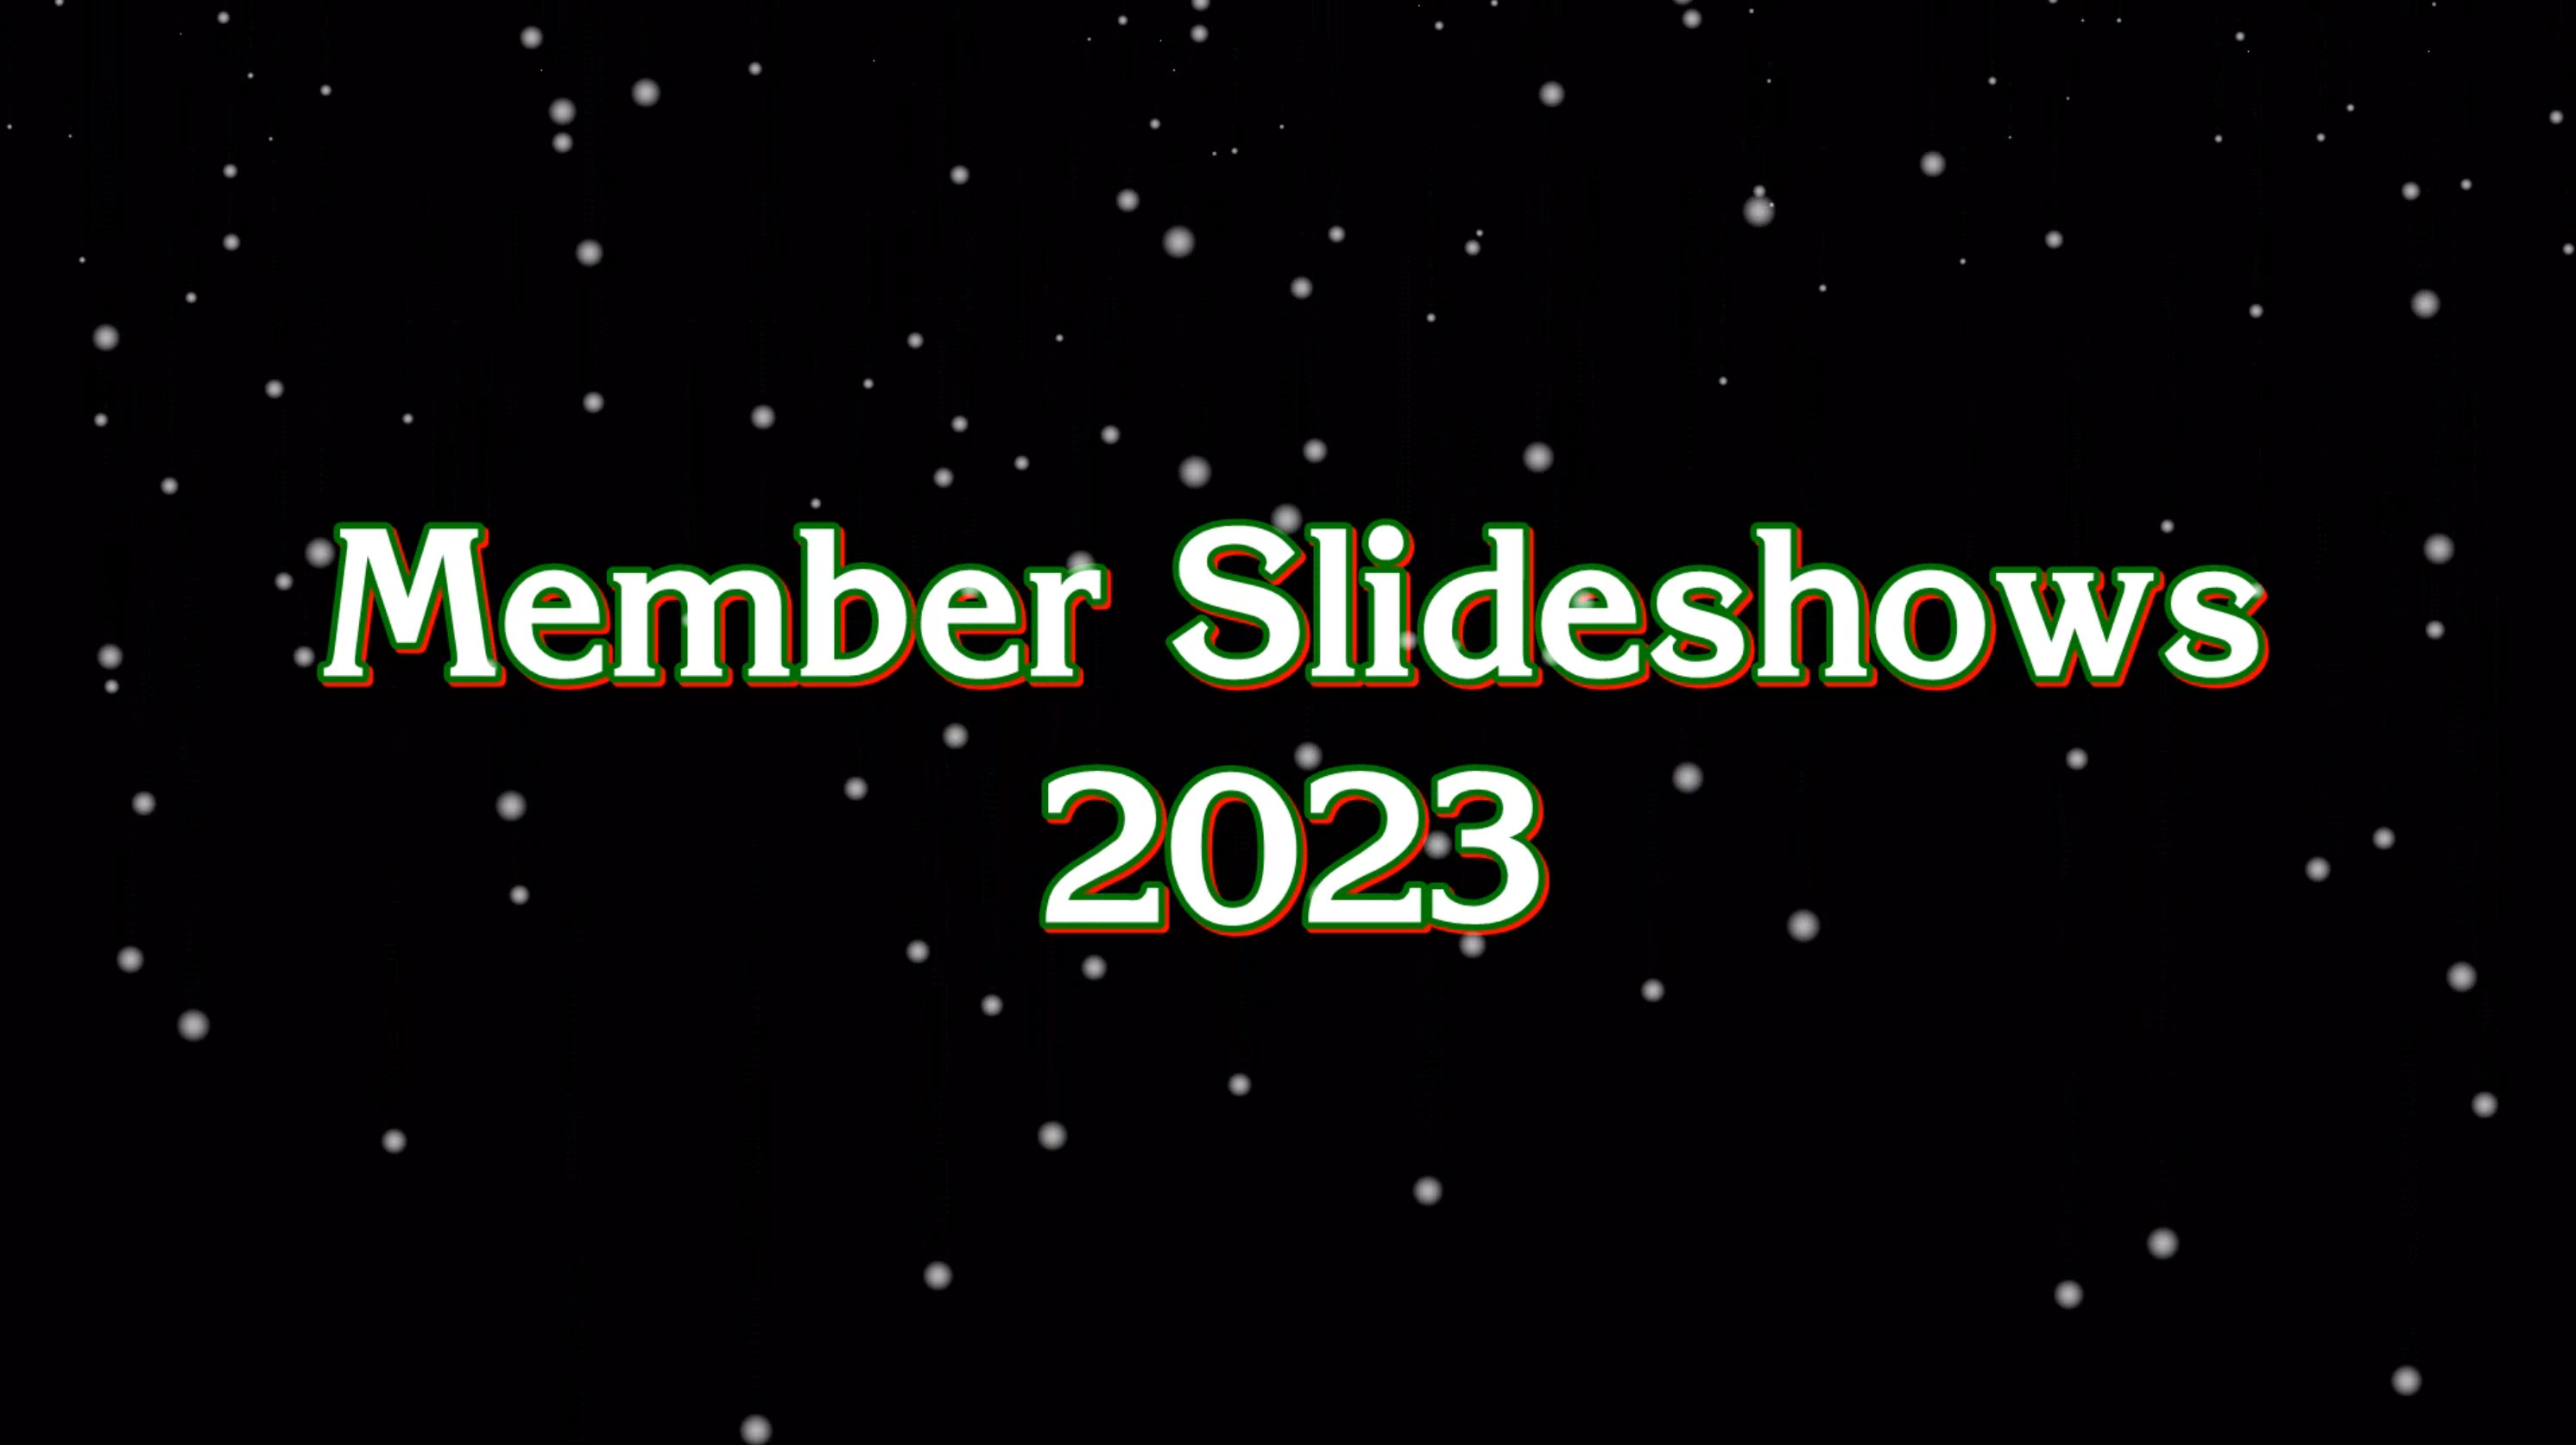 Member Slideshows 2023